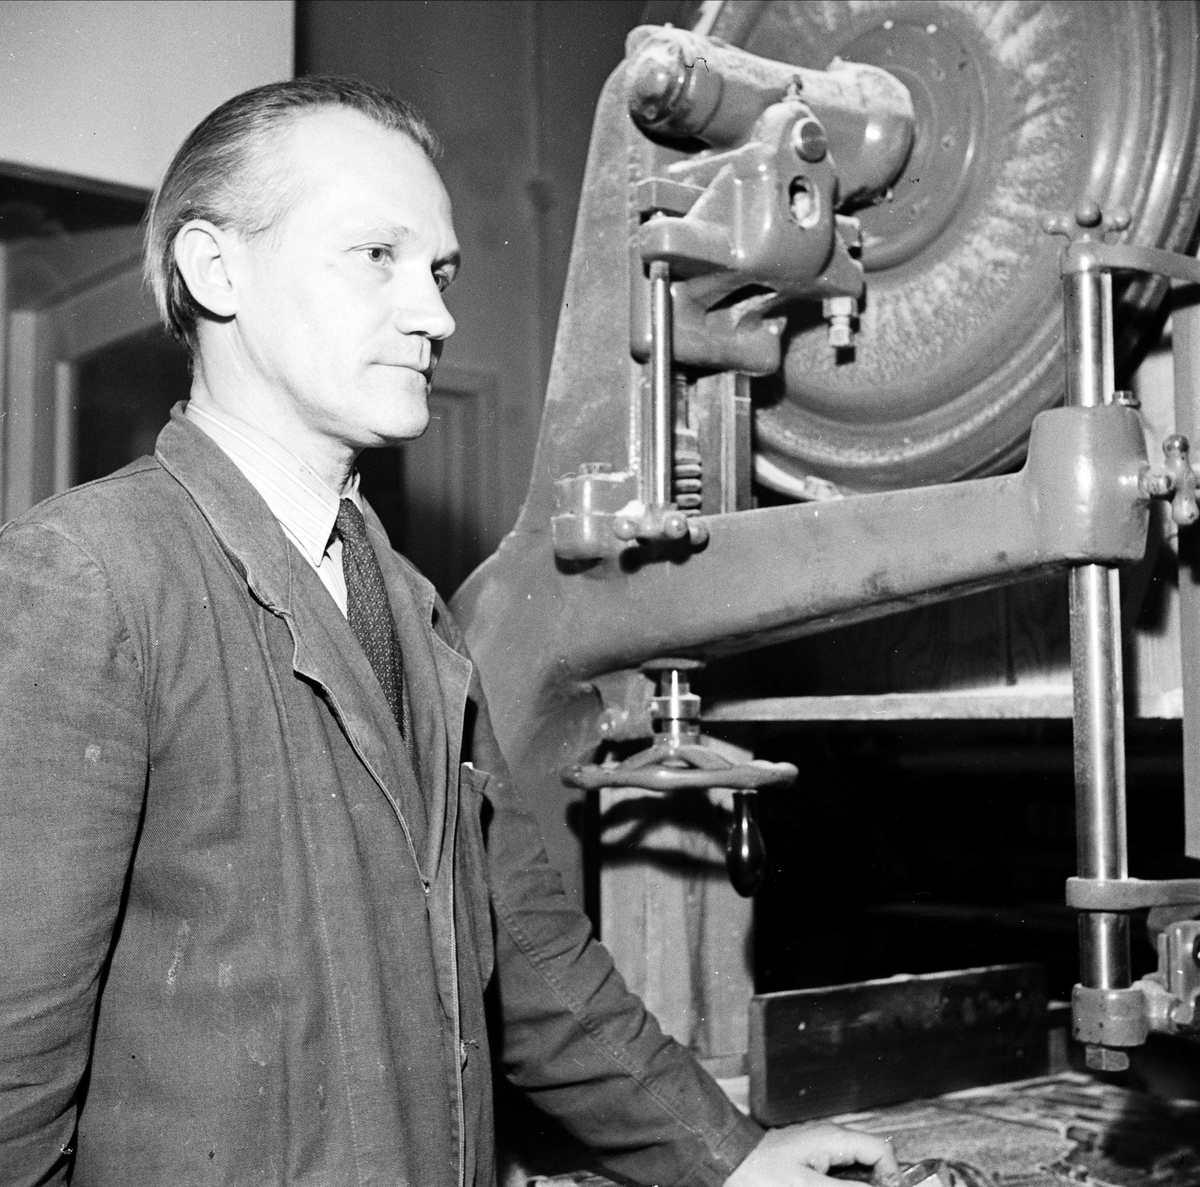 Man vid maskin på industri, sannolikt Uppsala, 1948